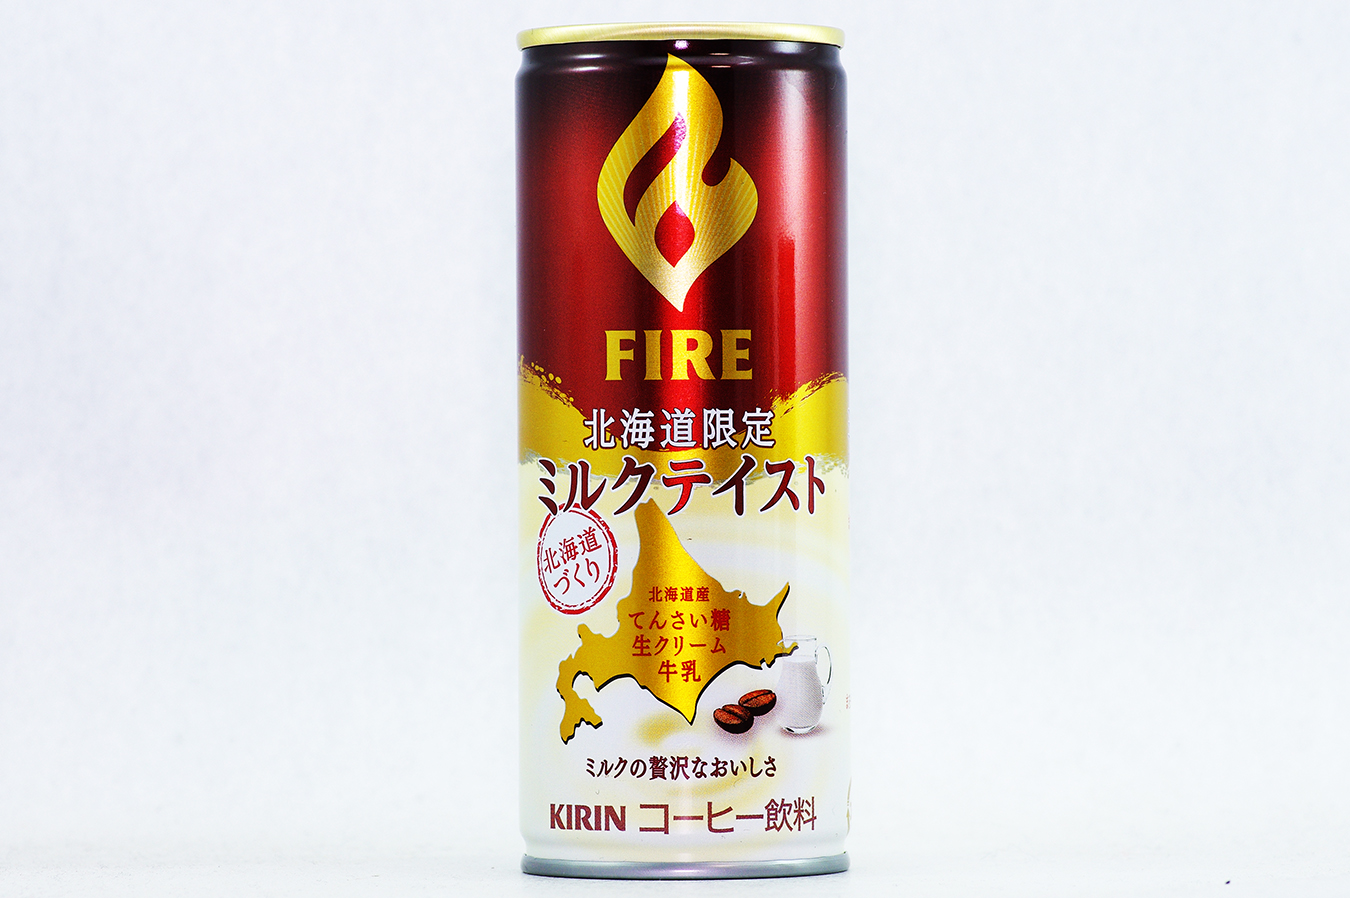 FIRE 北海道限定 ミルクテイスト 2017年9月